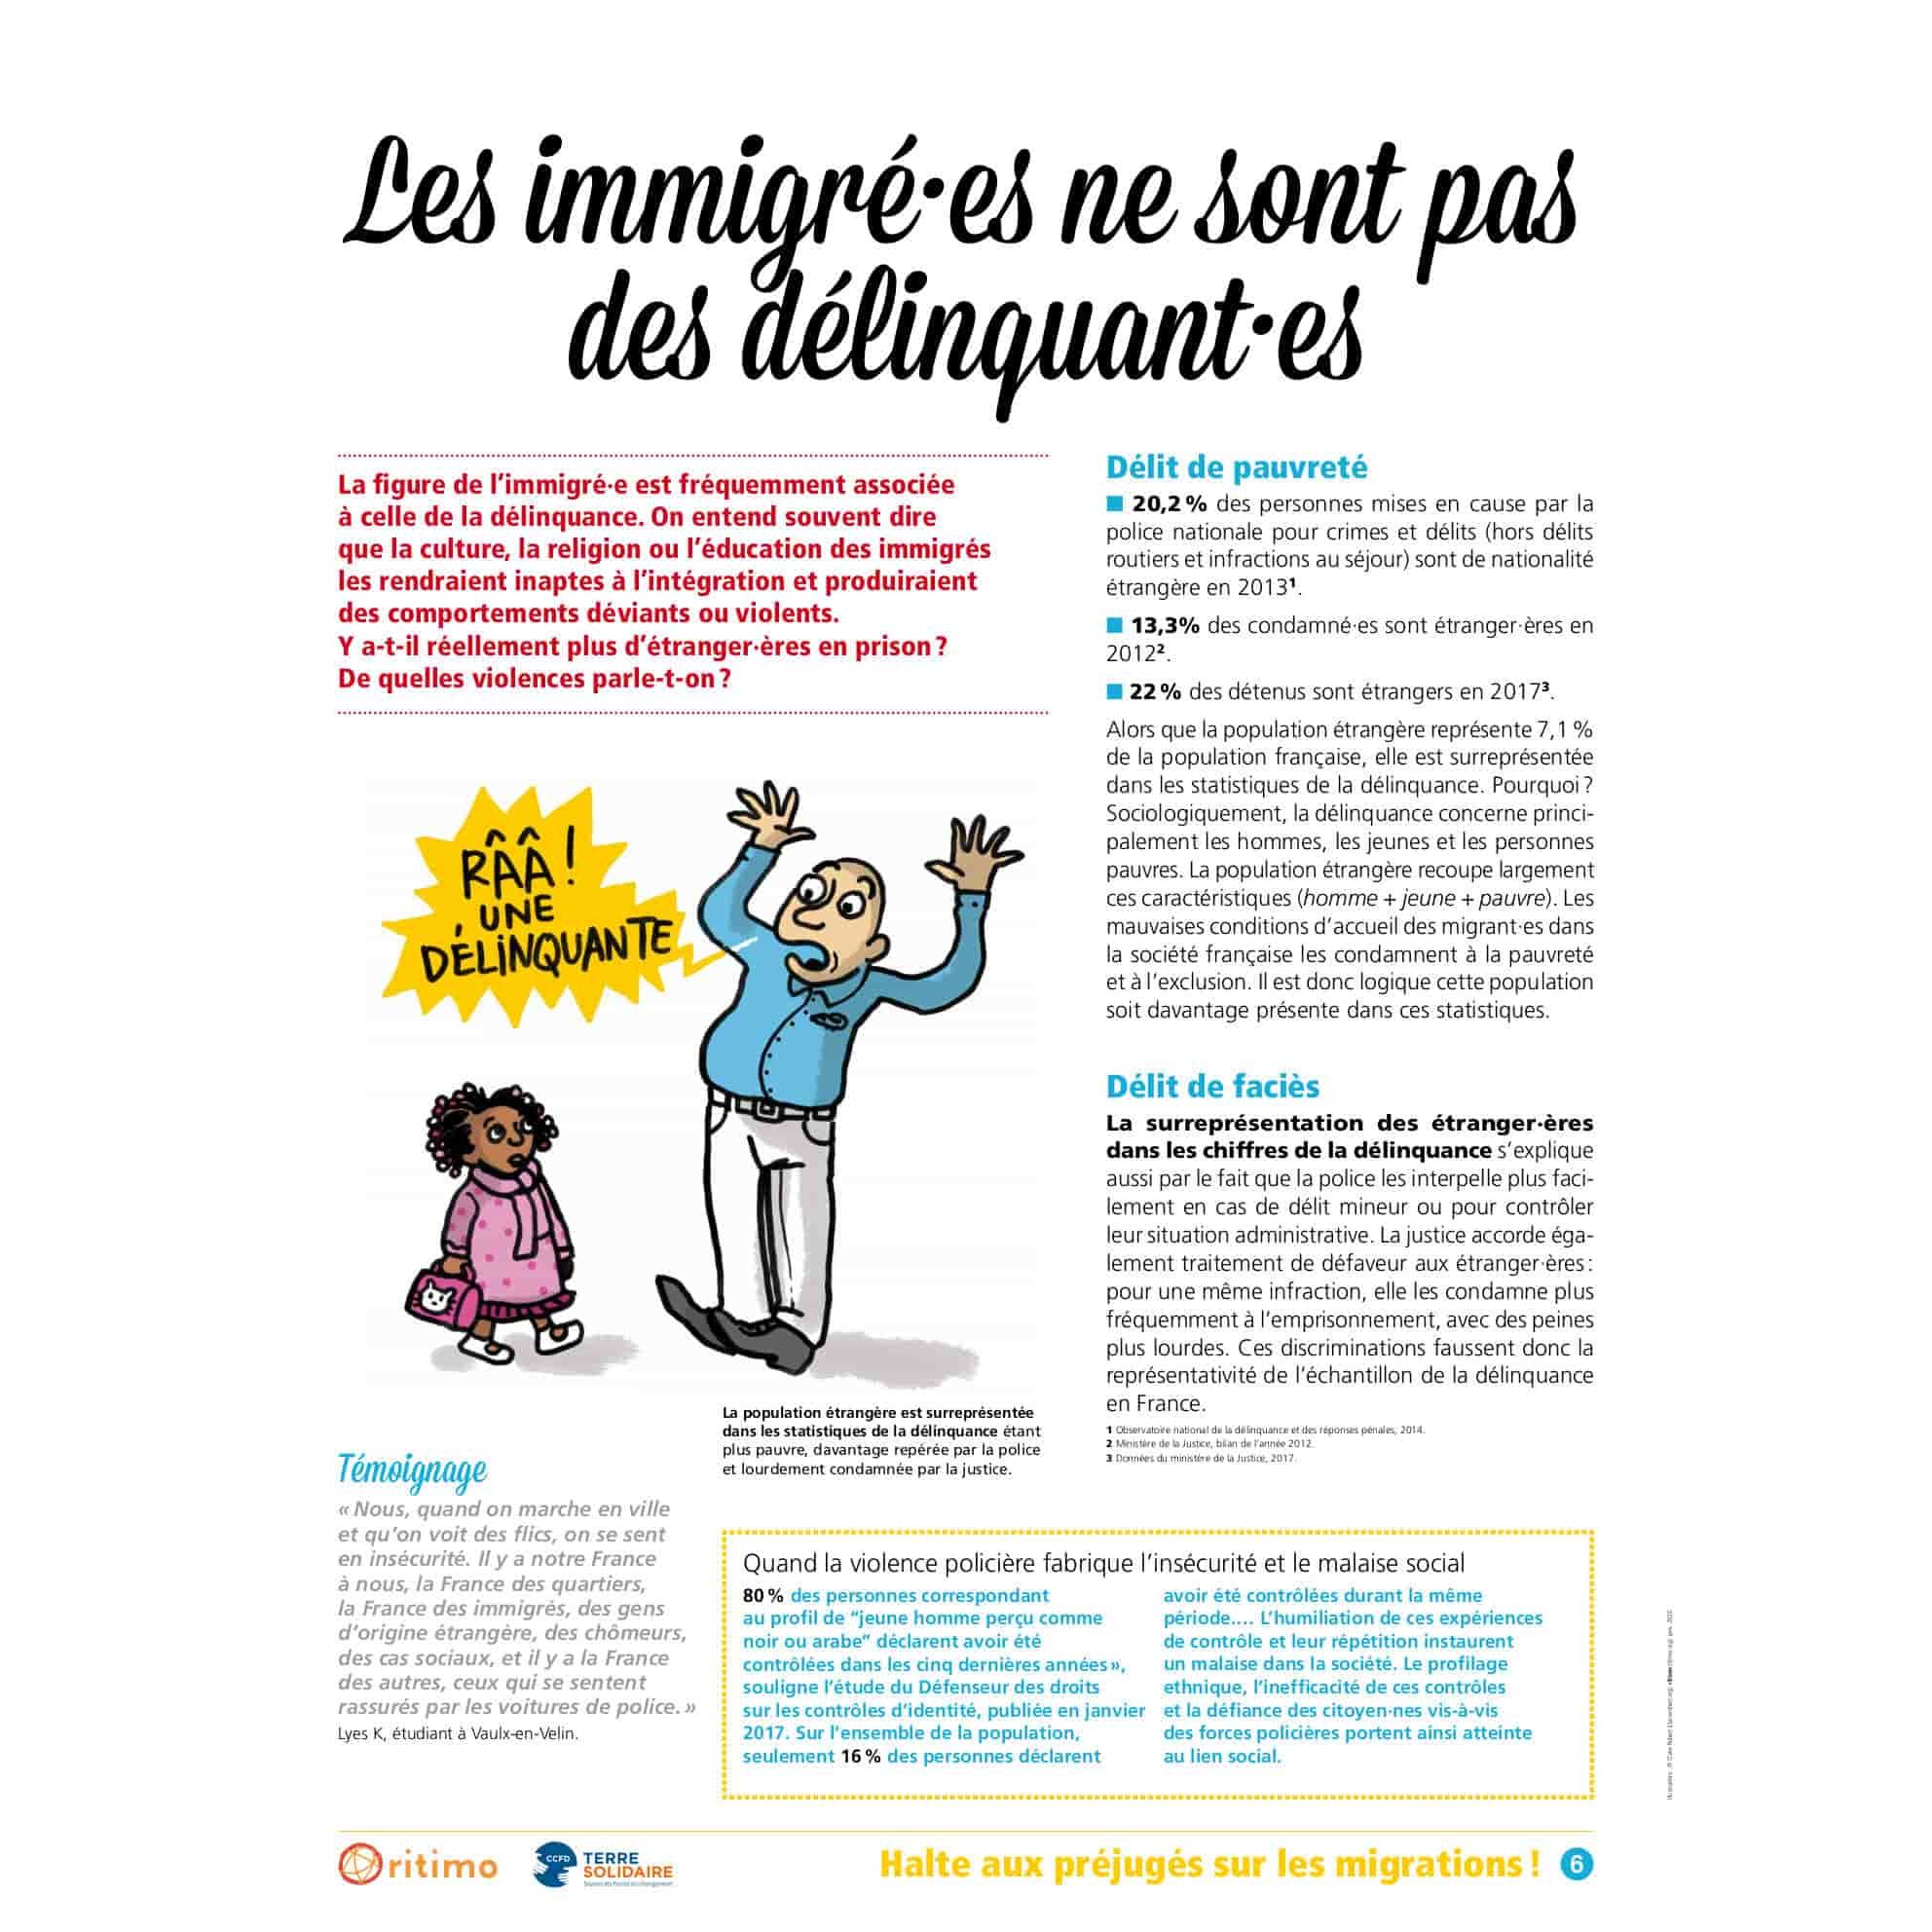 Panneau 6 de l'exposition Halte aux préjugés sur les migrations ! 